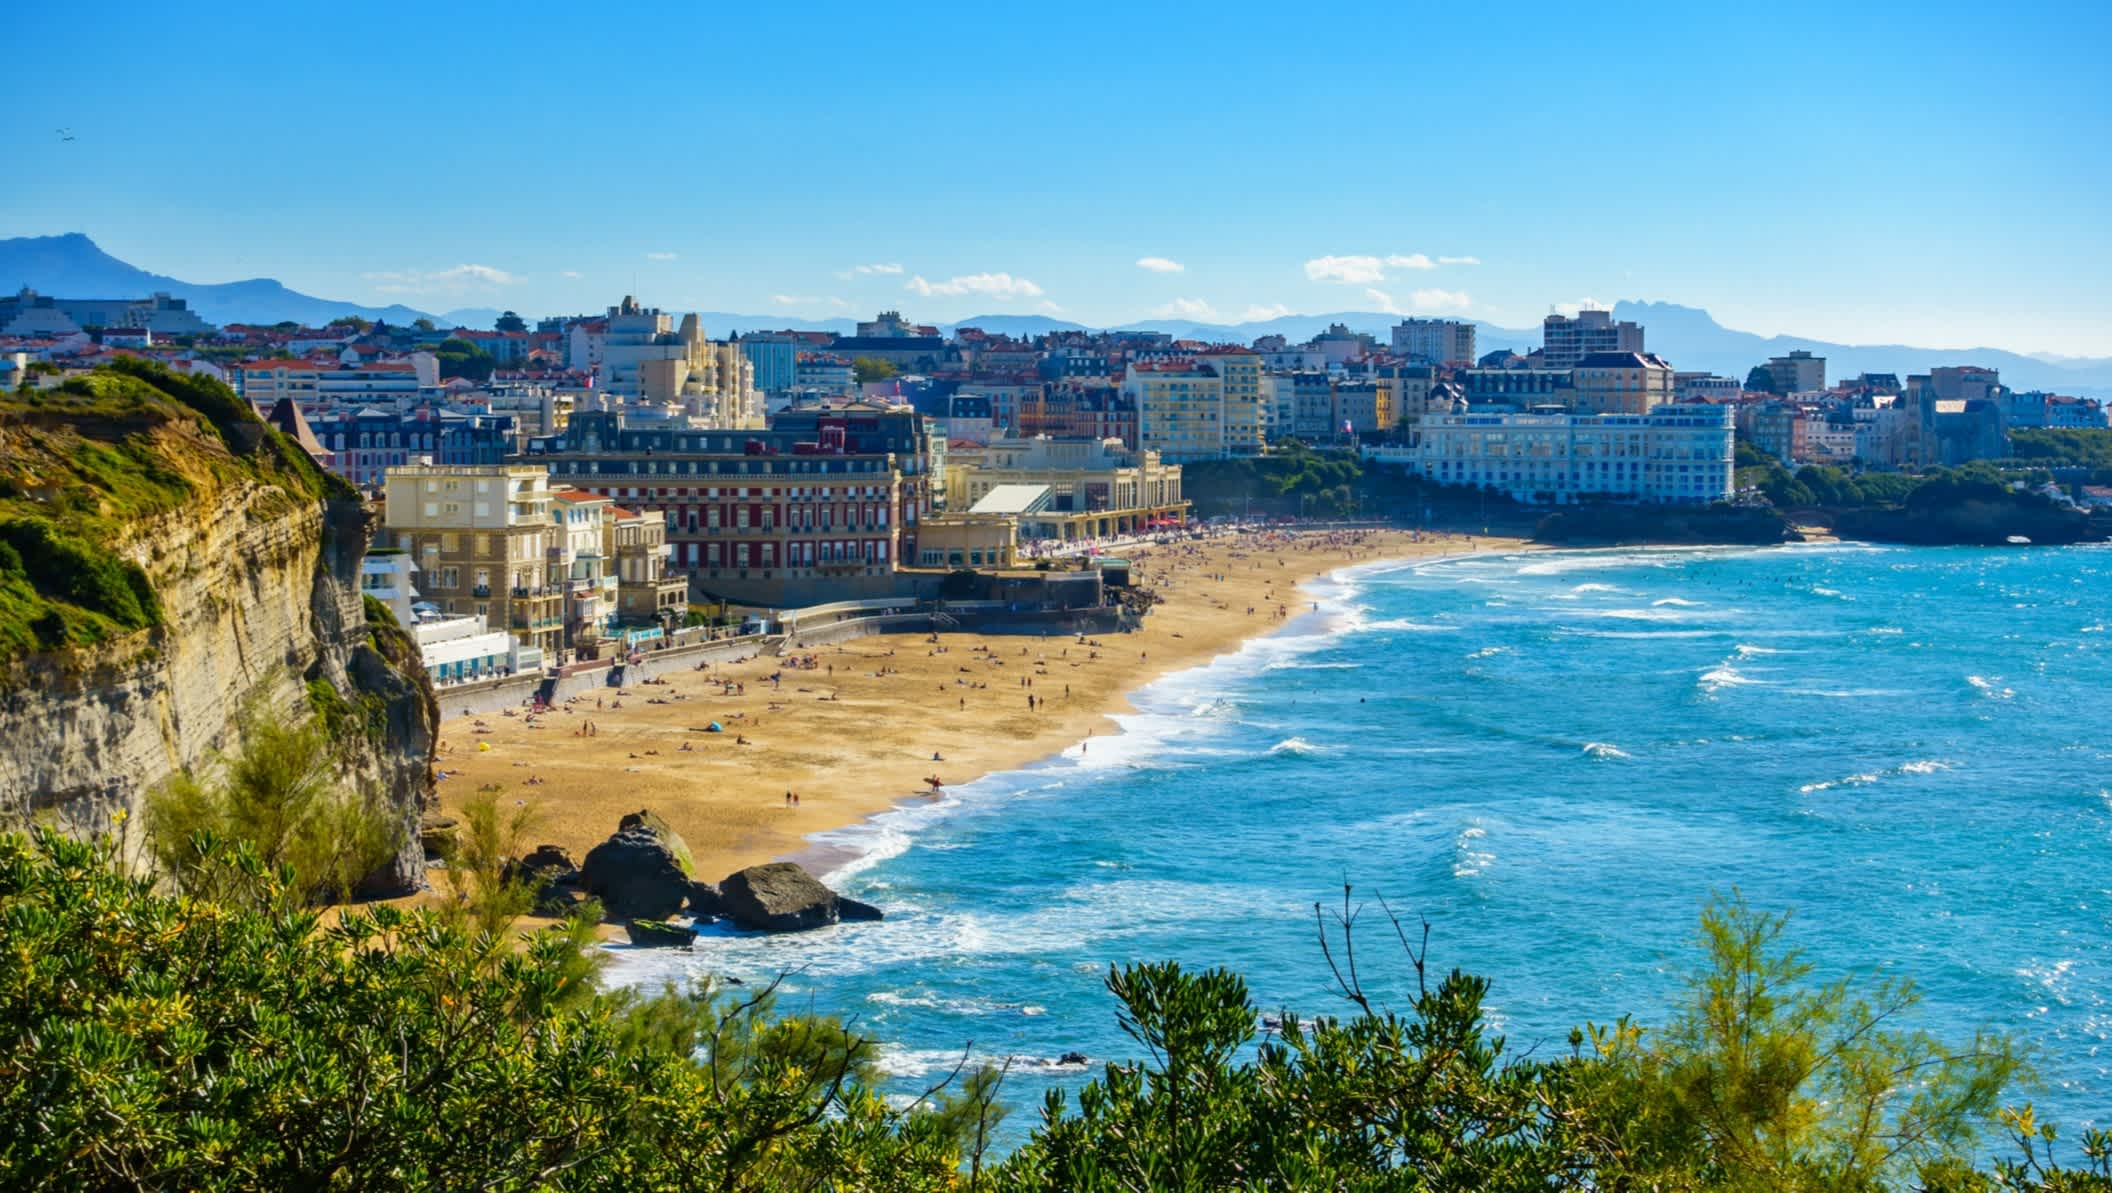 Vue aérienne sur la plage de la côte des basques, Biarritz en France

